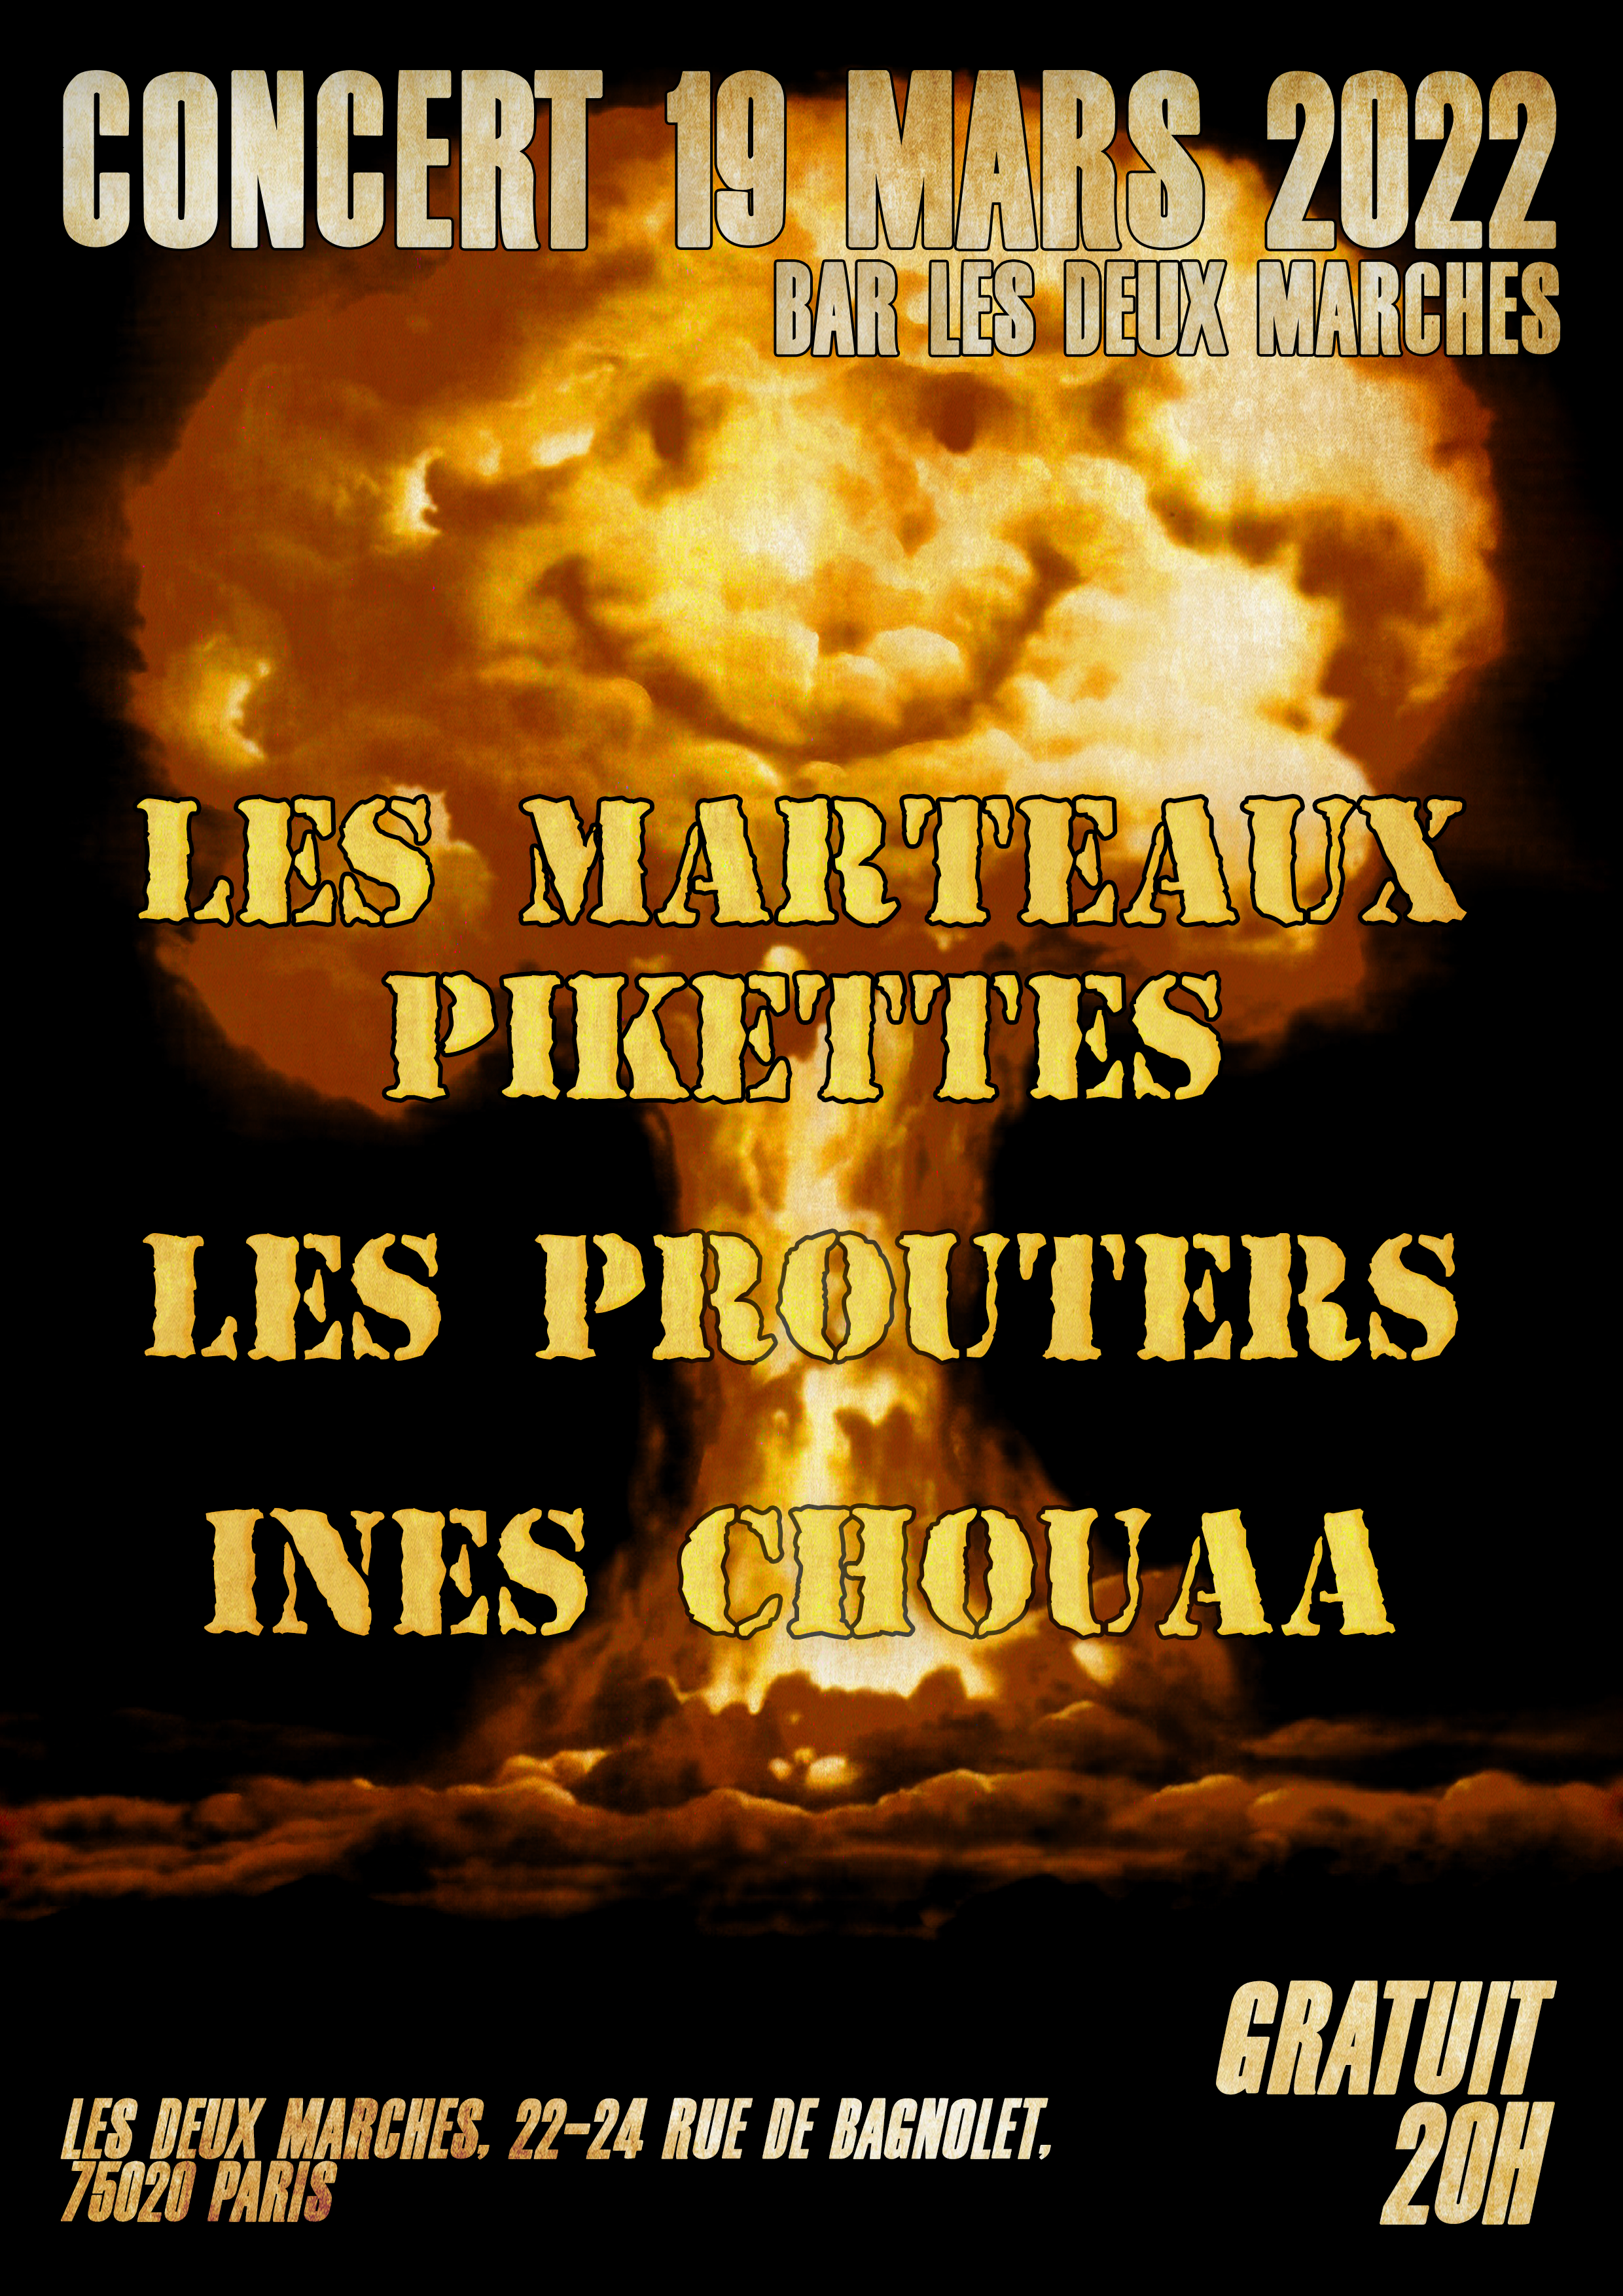 Les Marteaux Pikettes - Concert 19 mars 2022